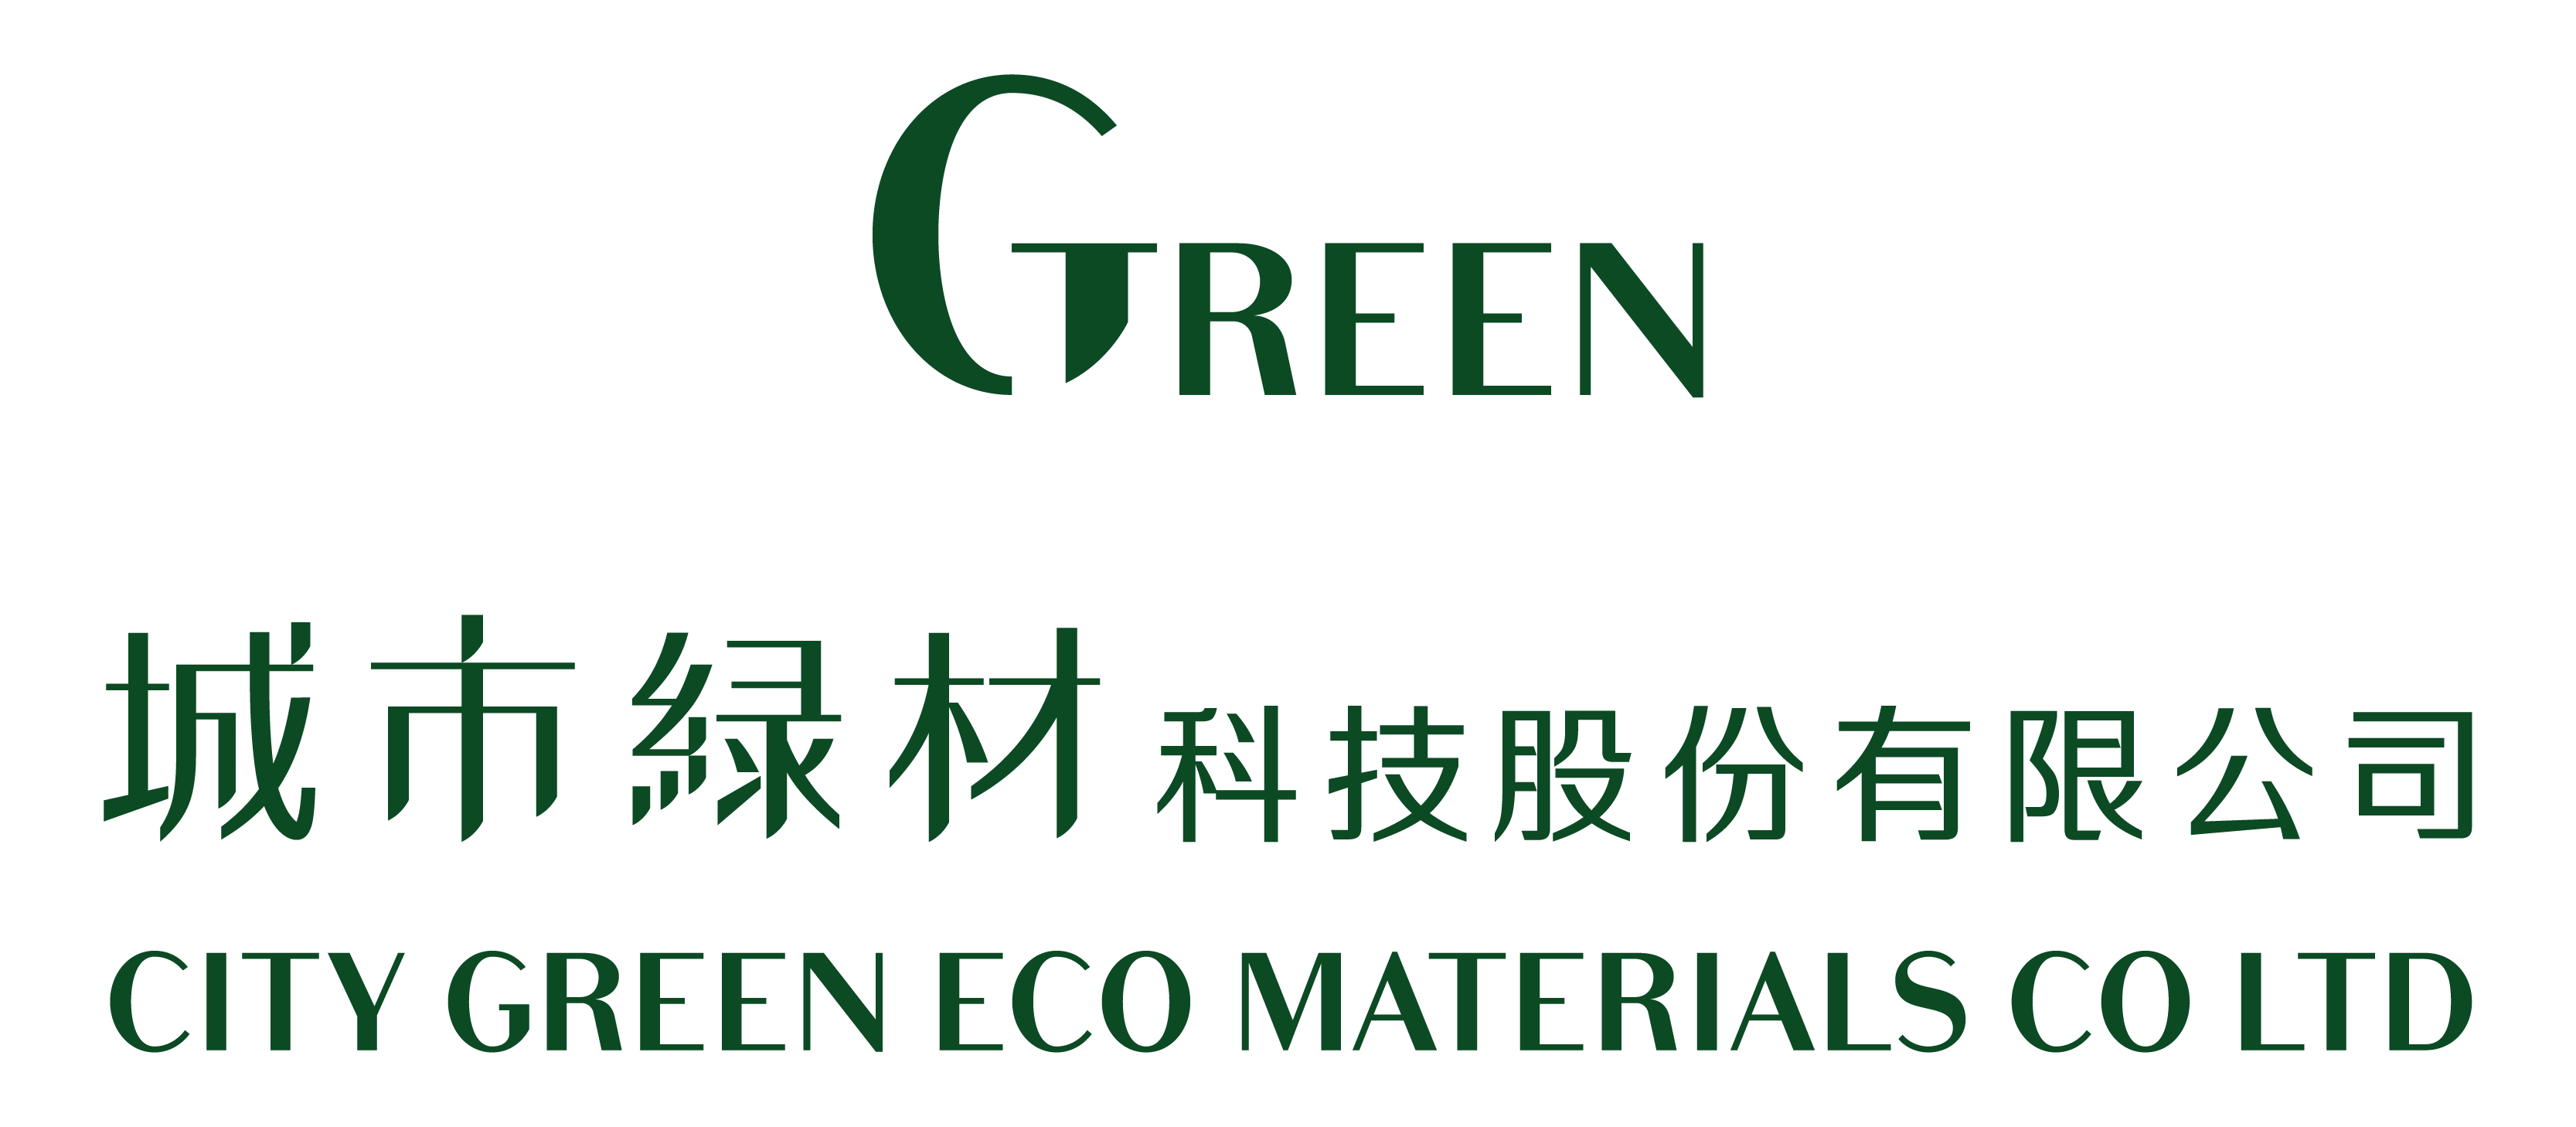 城市綠材logo